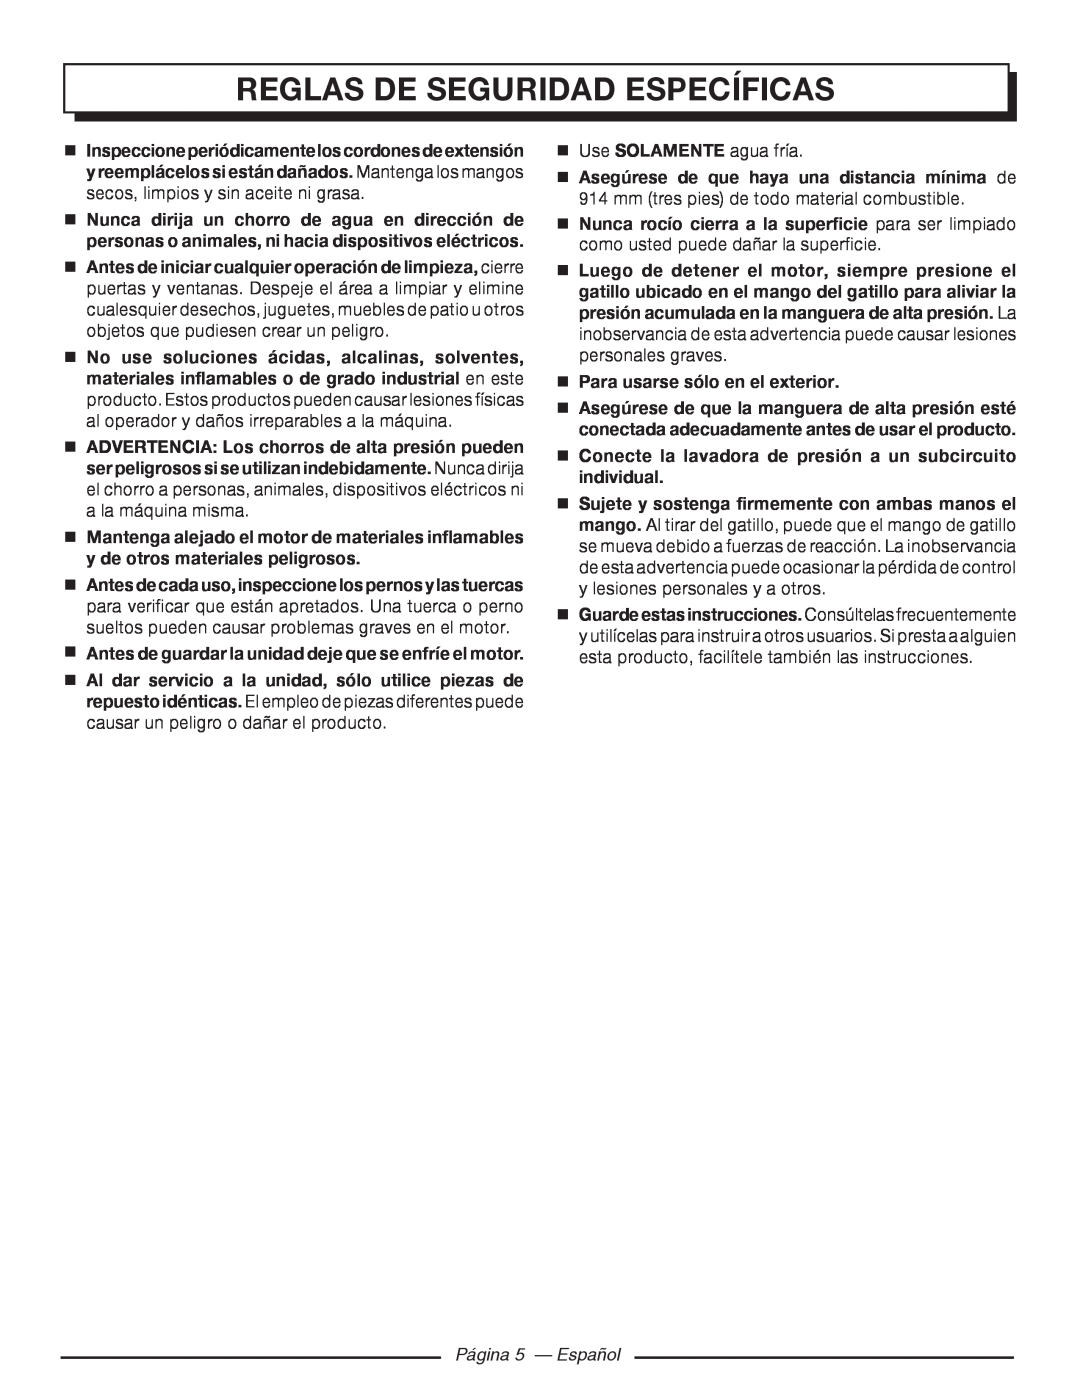 Homelite UT80720 manuel dutilisation Página 5 - Español, Reglas De Seguridad Específicas 